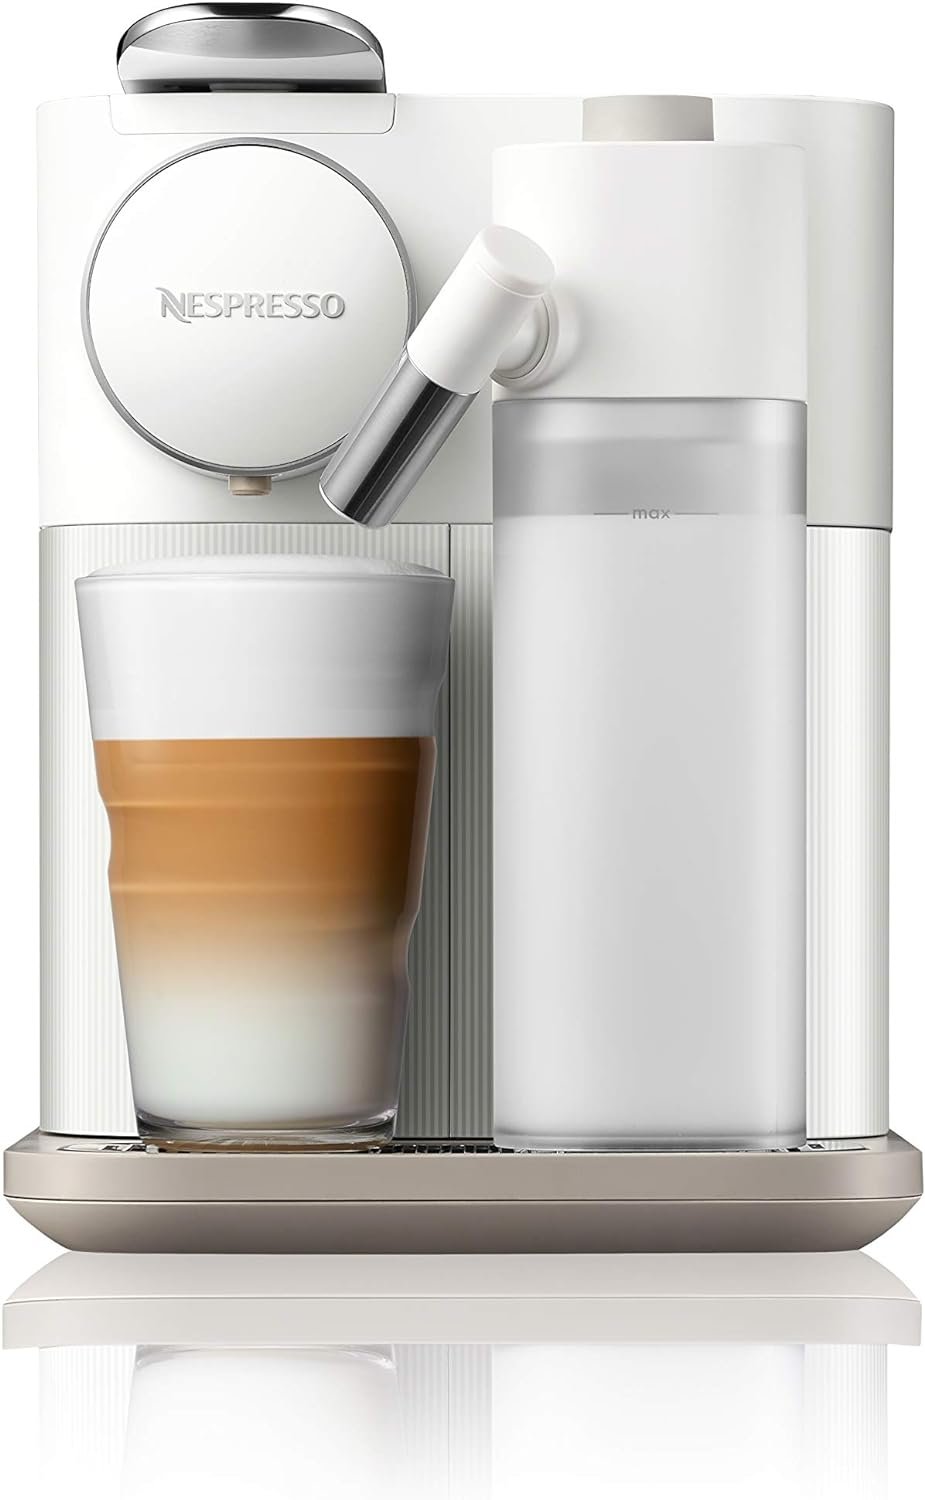 Nespresso Gran Lattissima Original Espresso Machine with Milk Frother by DeLonghi, Fresh White